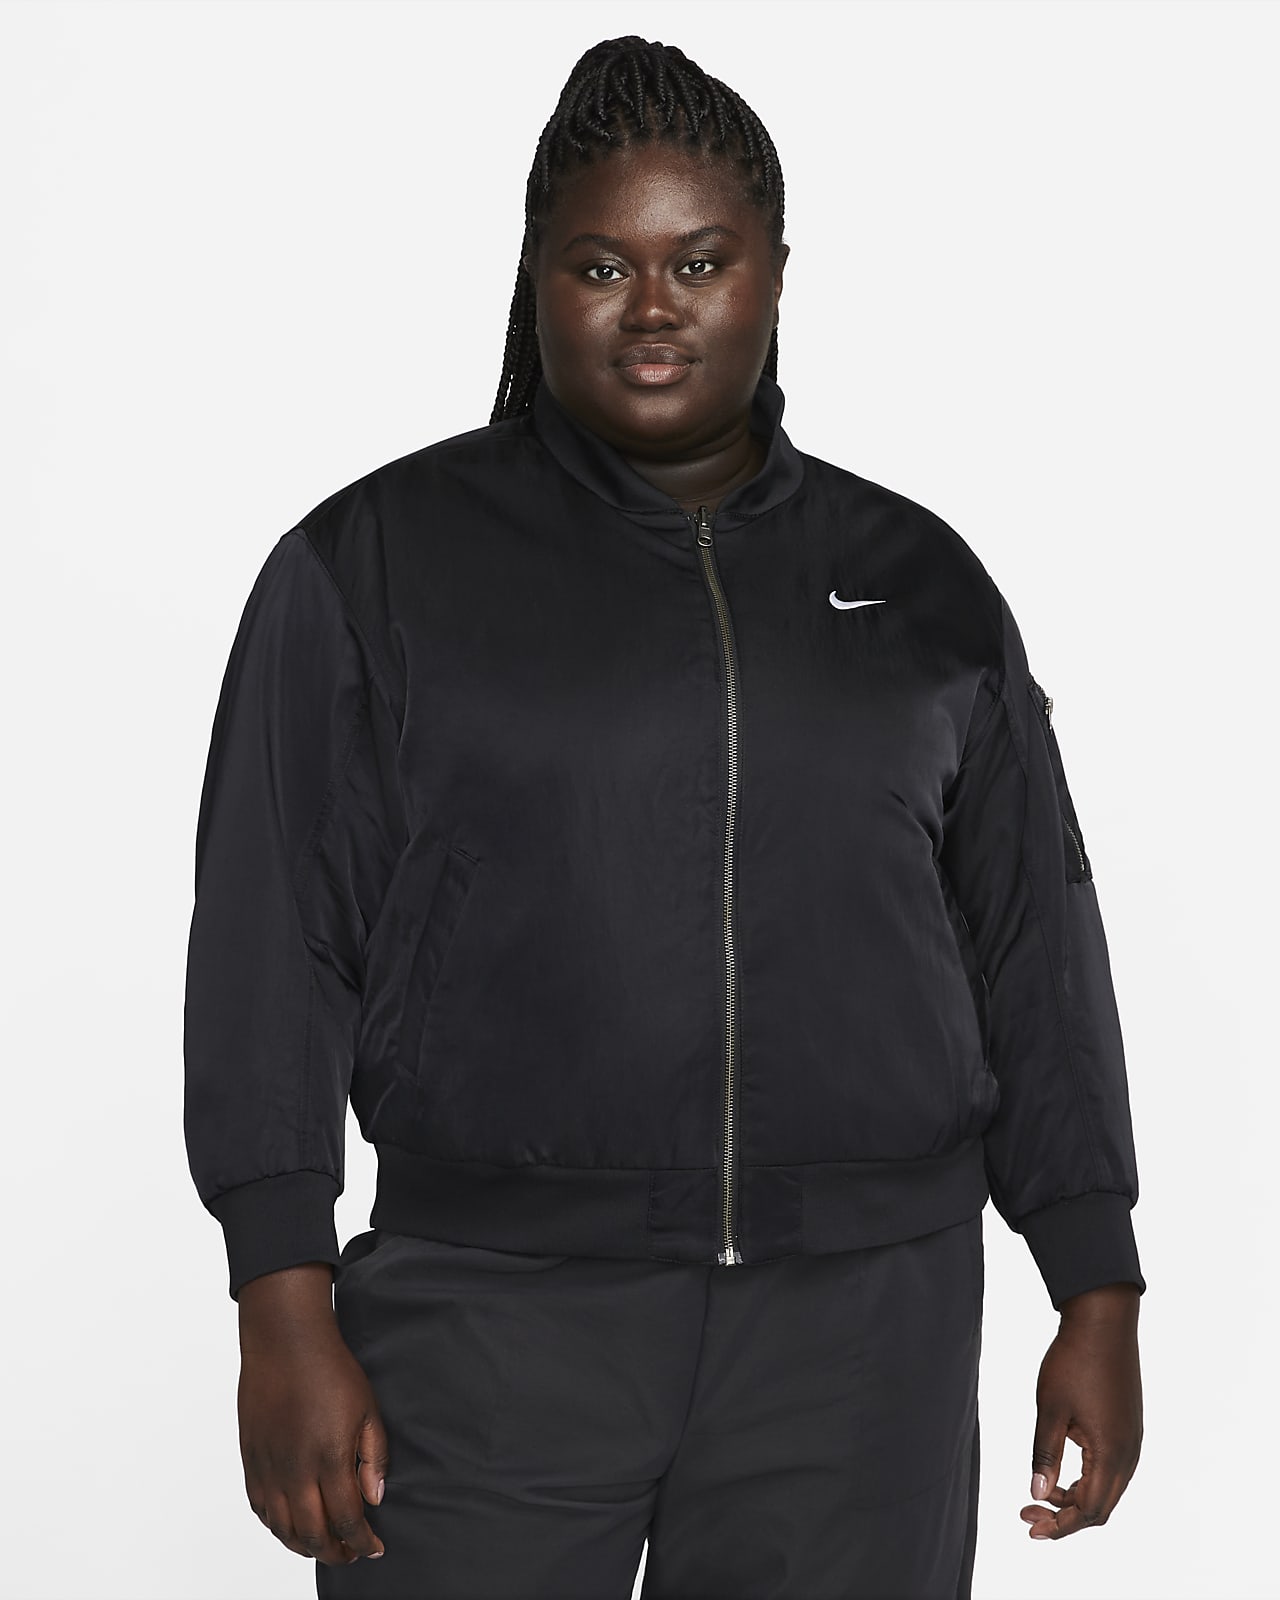 Γυναικείο κολεγιακό bomber τζάκετ διπλής όψης Nike Sportswear (μεγάλα μεγέθη)